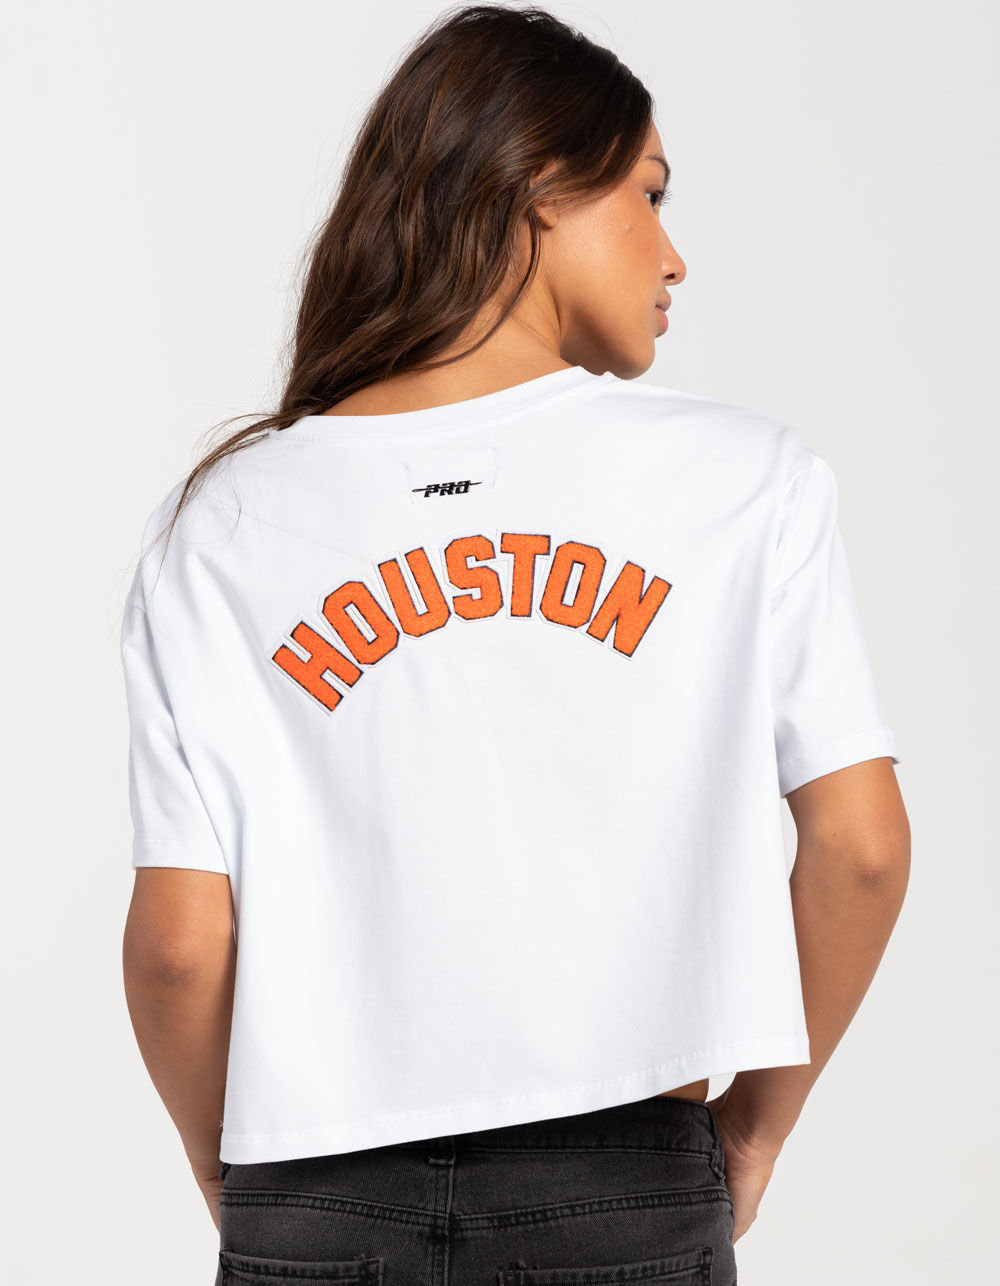 Nike Houston Astros Women's Jersey size XL in 2023